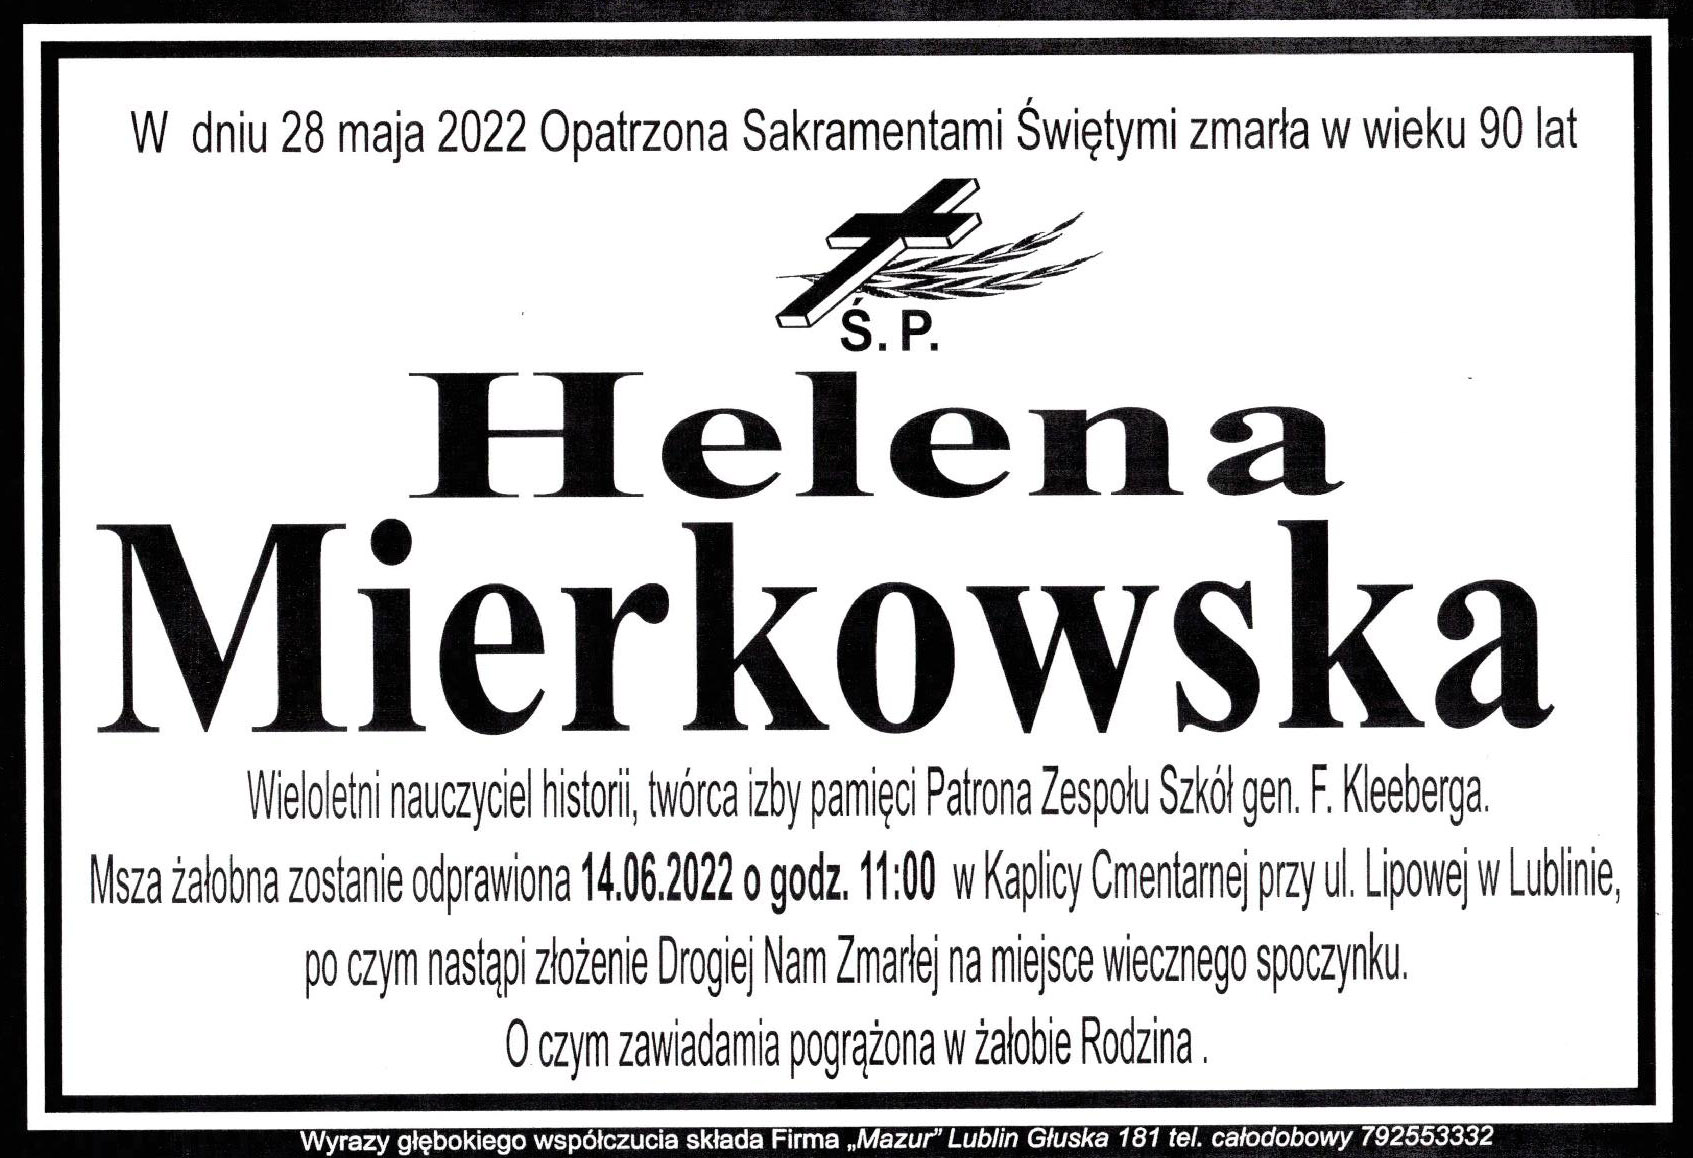 W dniu 28 maja 2022 zmarła Ś. P. Helena Mierkowska